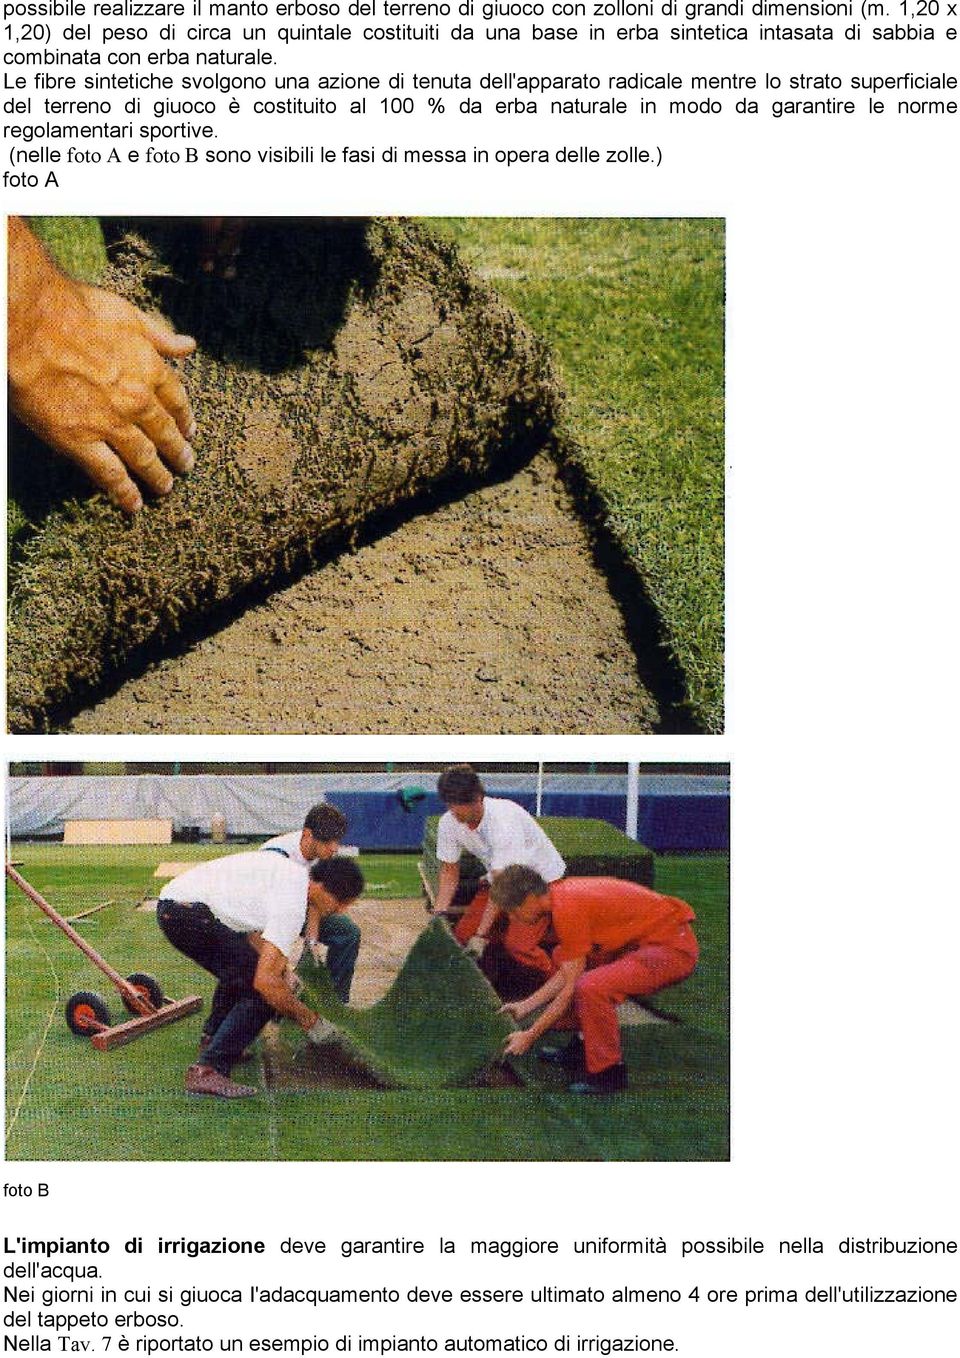 Le fibre sintetiche svolgono una azione di tenuta dell'apparato radicale mentre lo strato superficiale del terreno di giuoco è costituito al 100 % da erba naturale in modo da garantire le norme